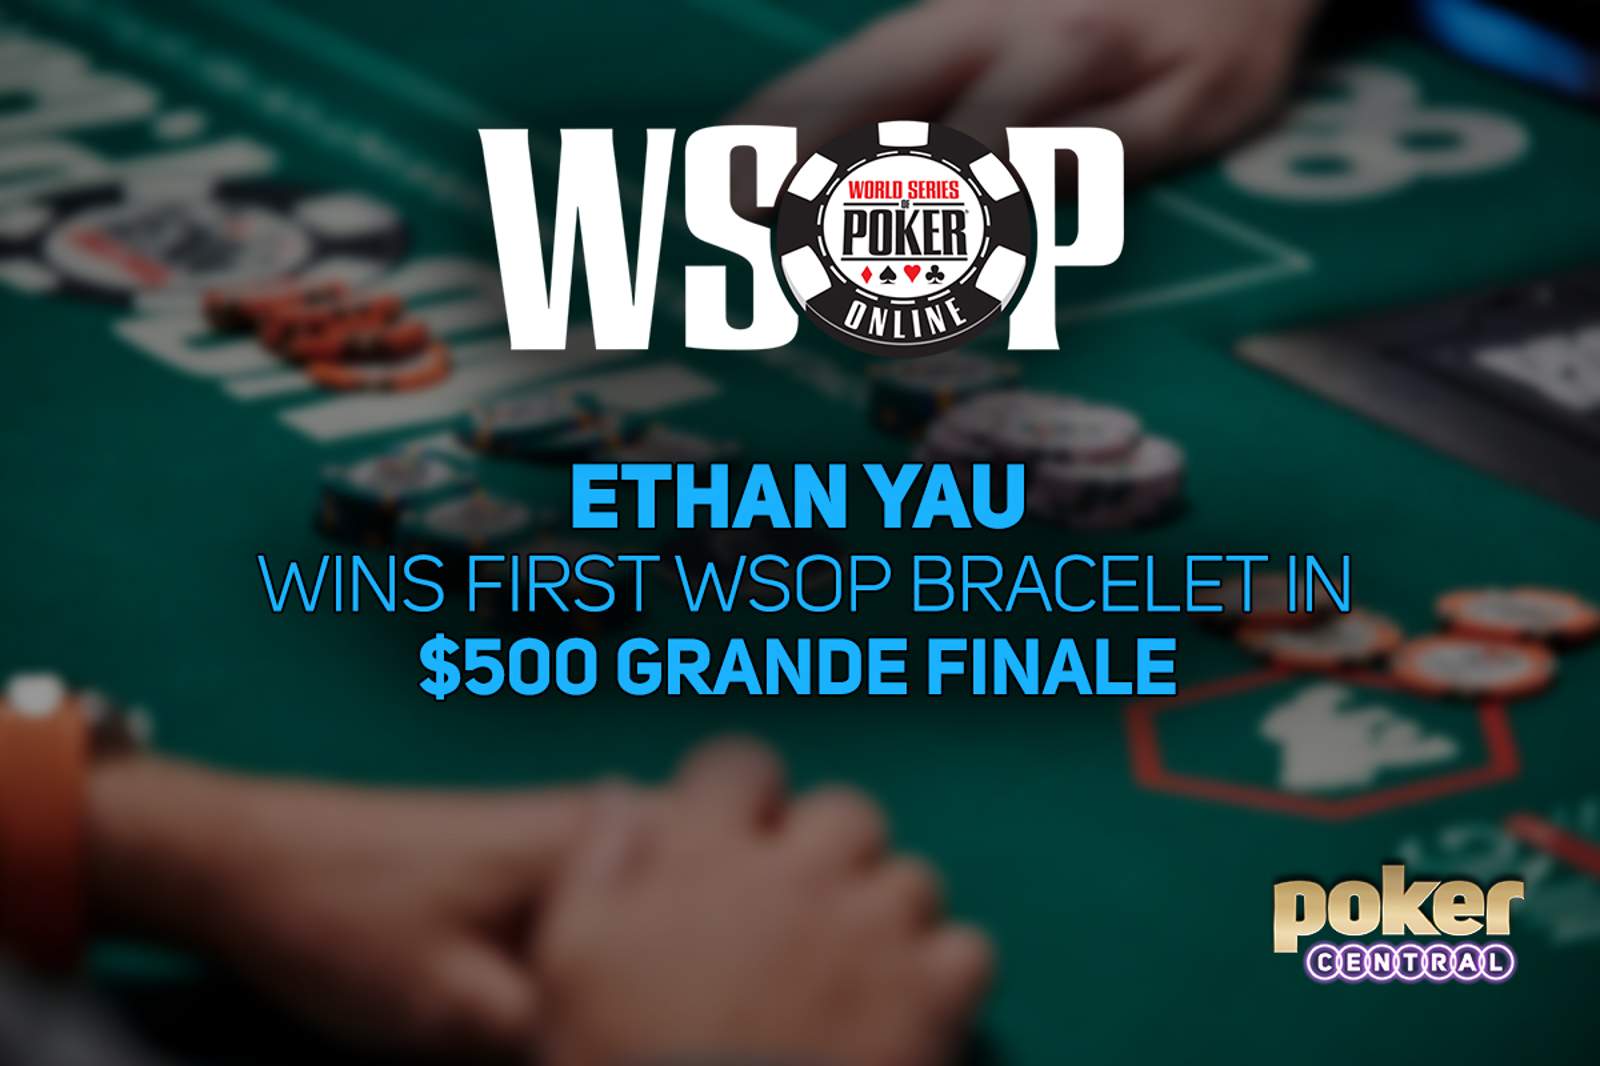 Ethan Yau Wins WSOP Online $500 Grande Finale for $164,494